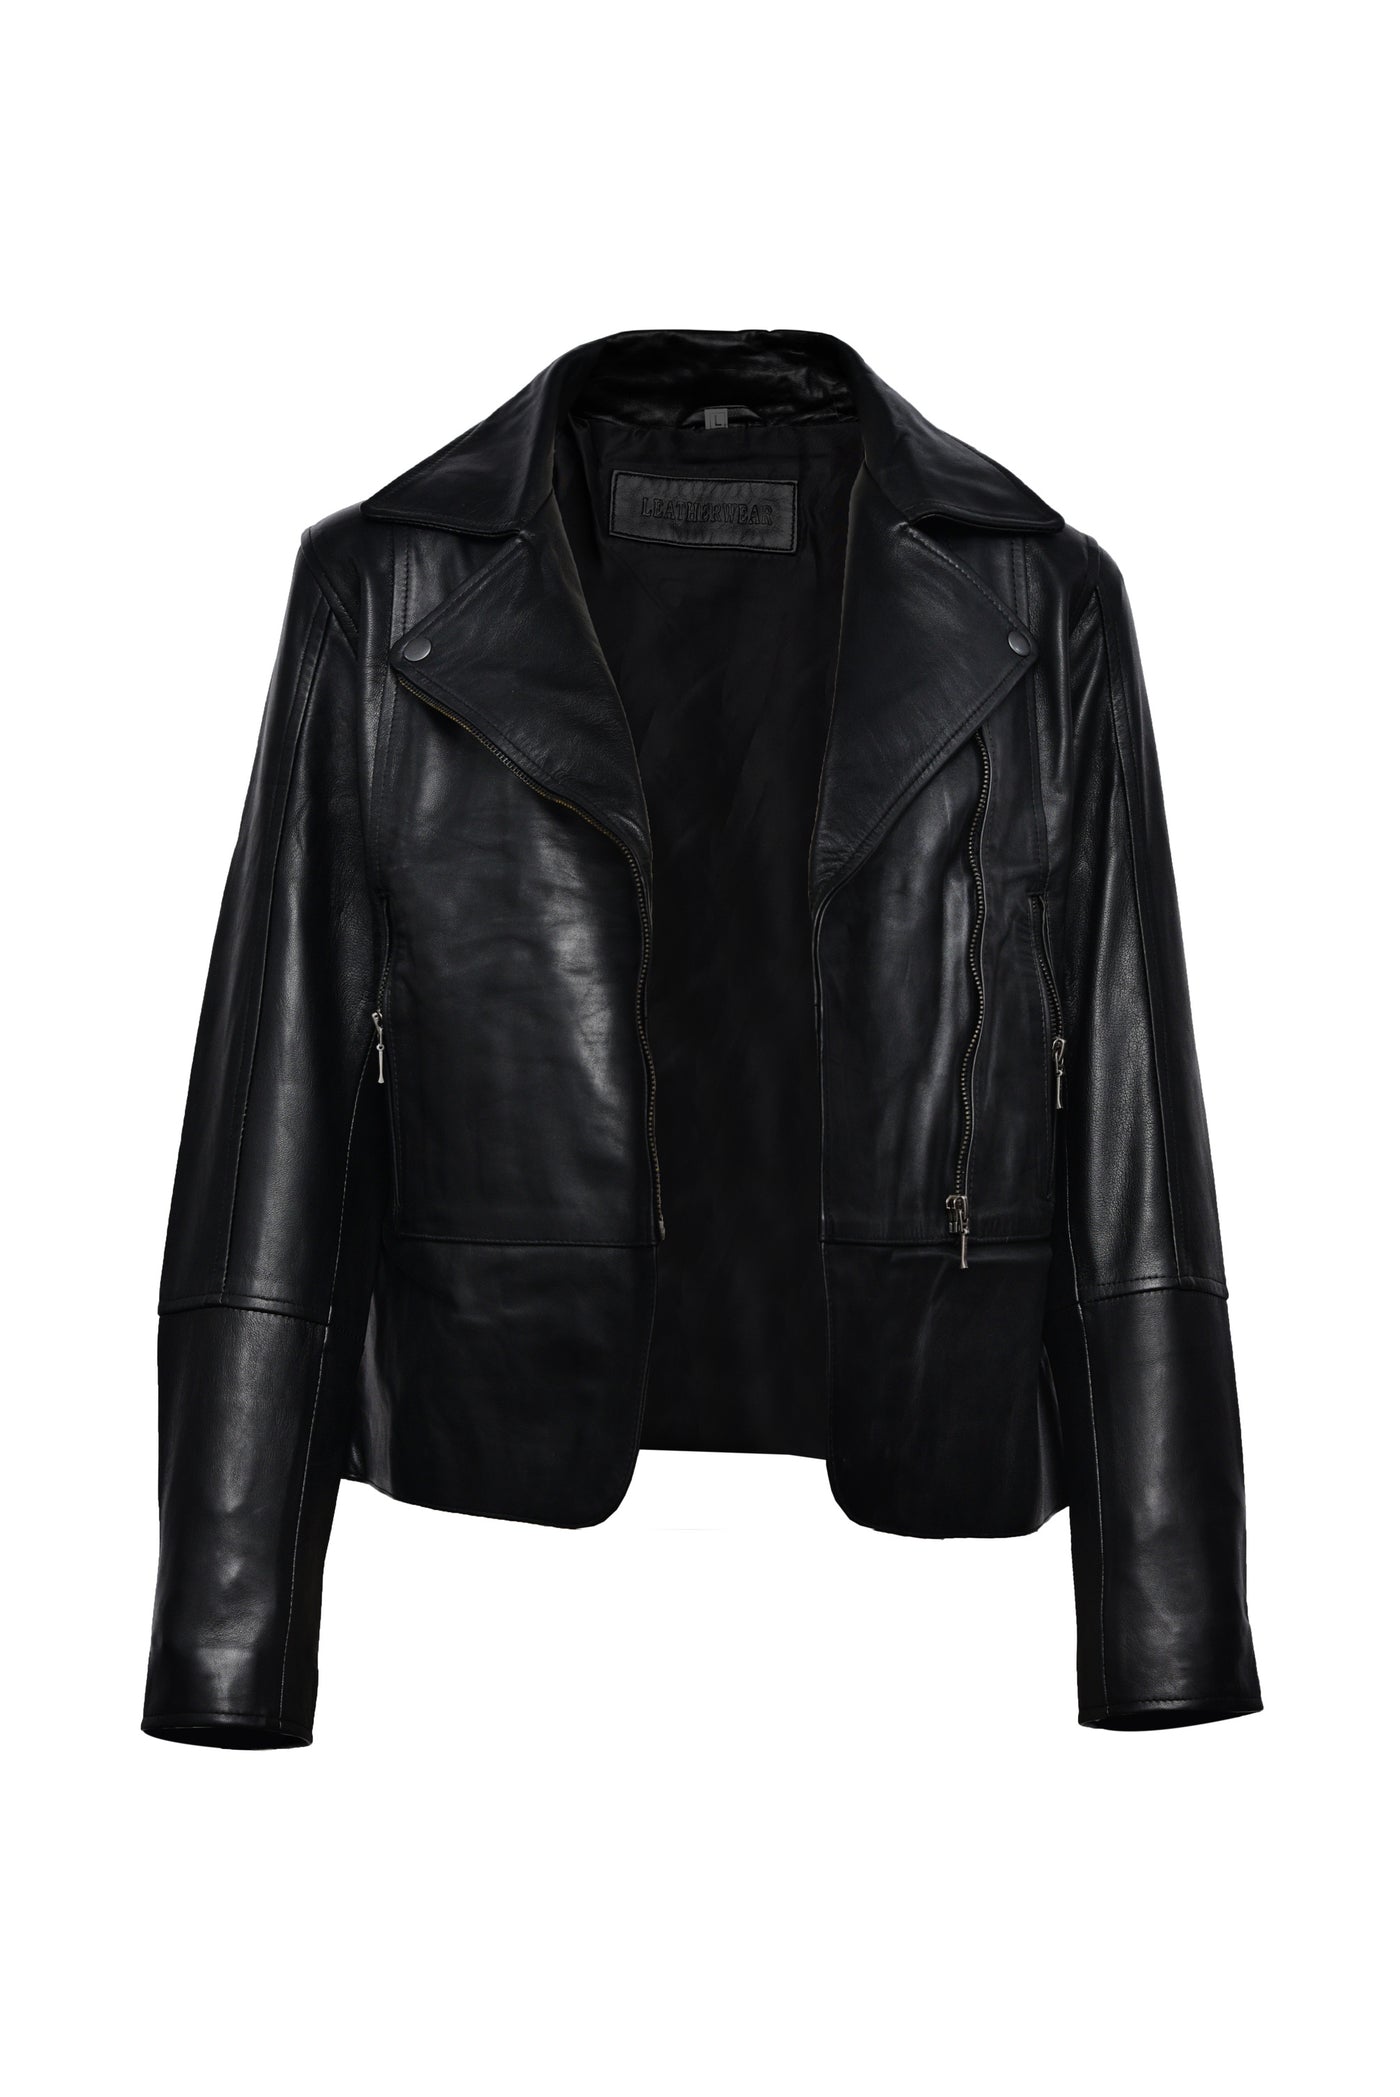 Black Biker Leather Jacket For Sale